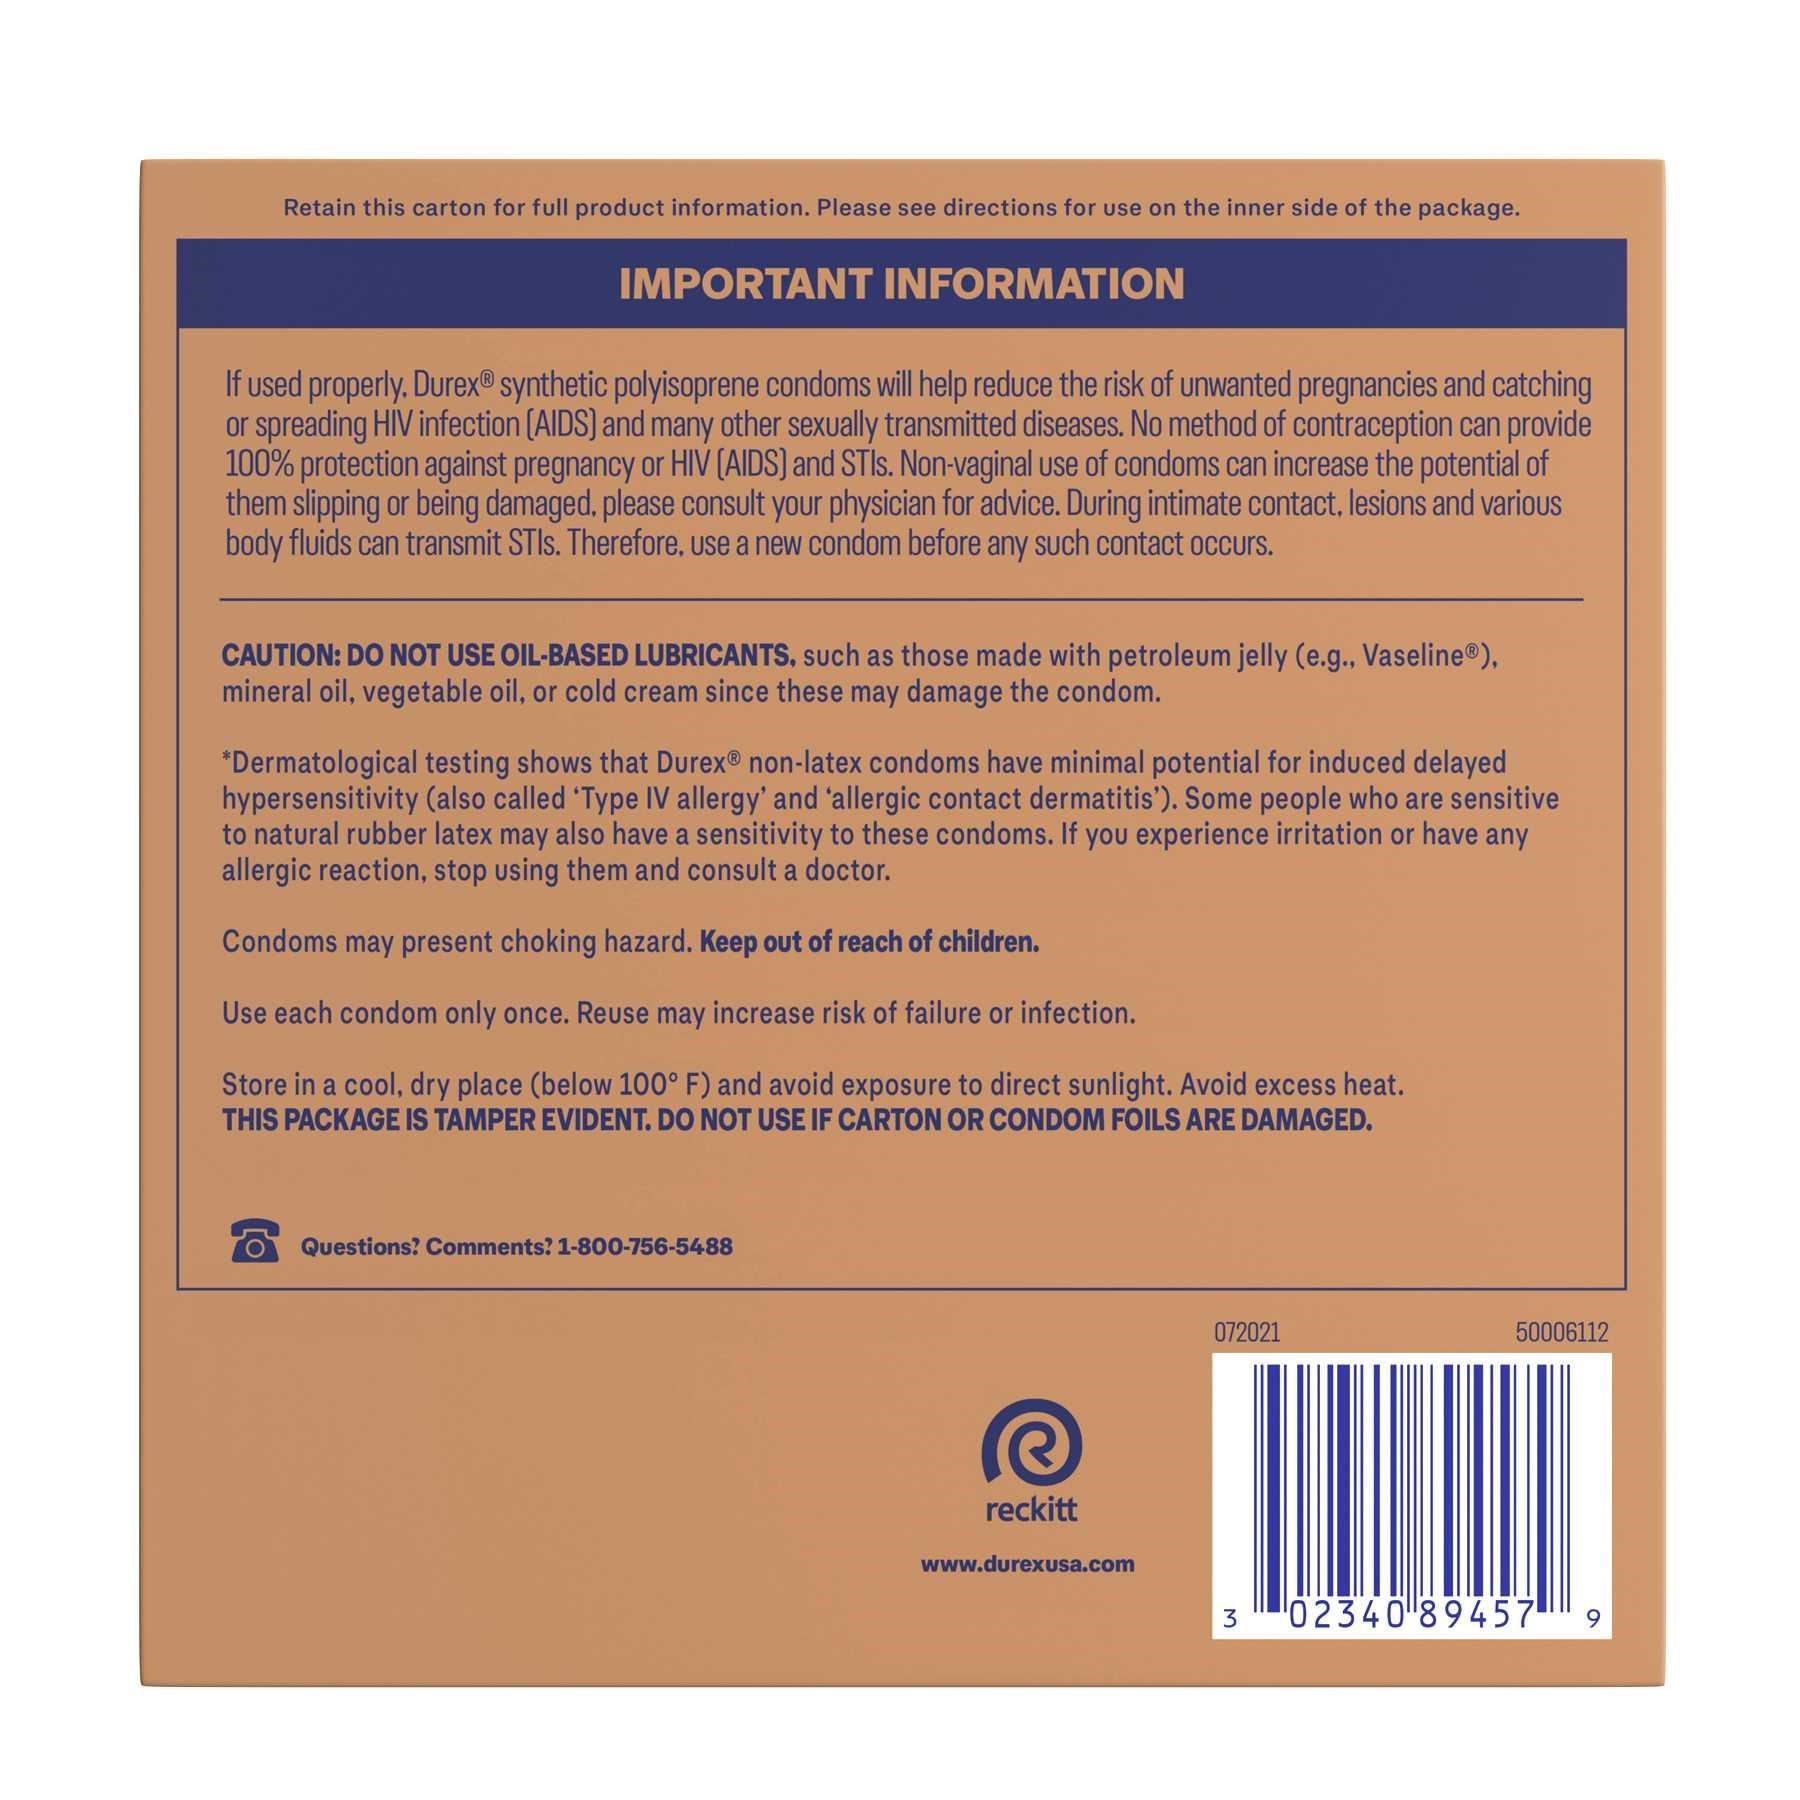 Durex Avanti Bare Realfeel Non-Latex Condom back copy